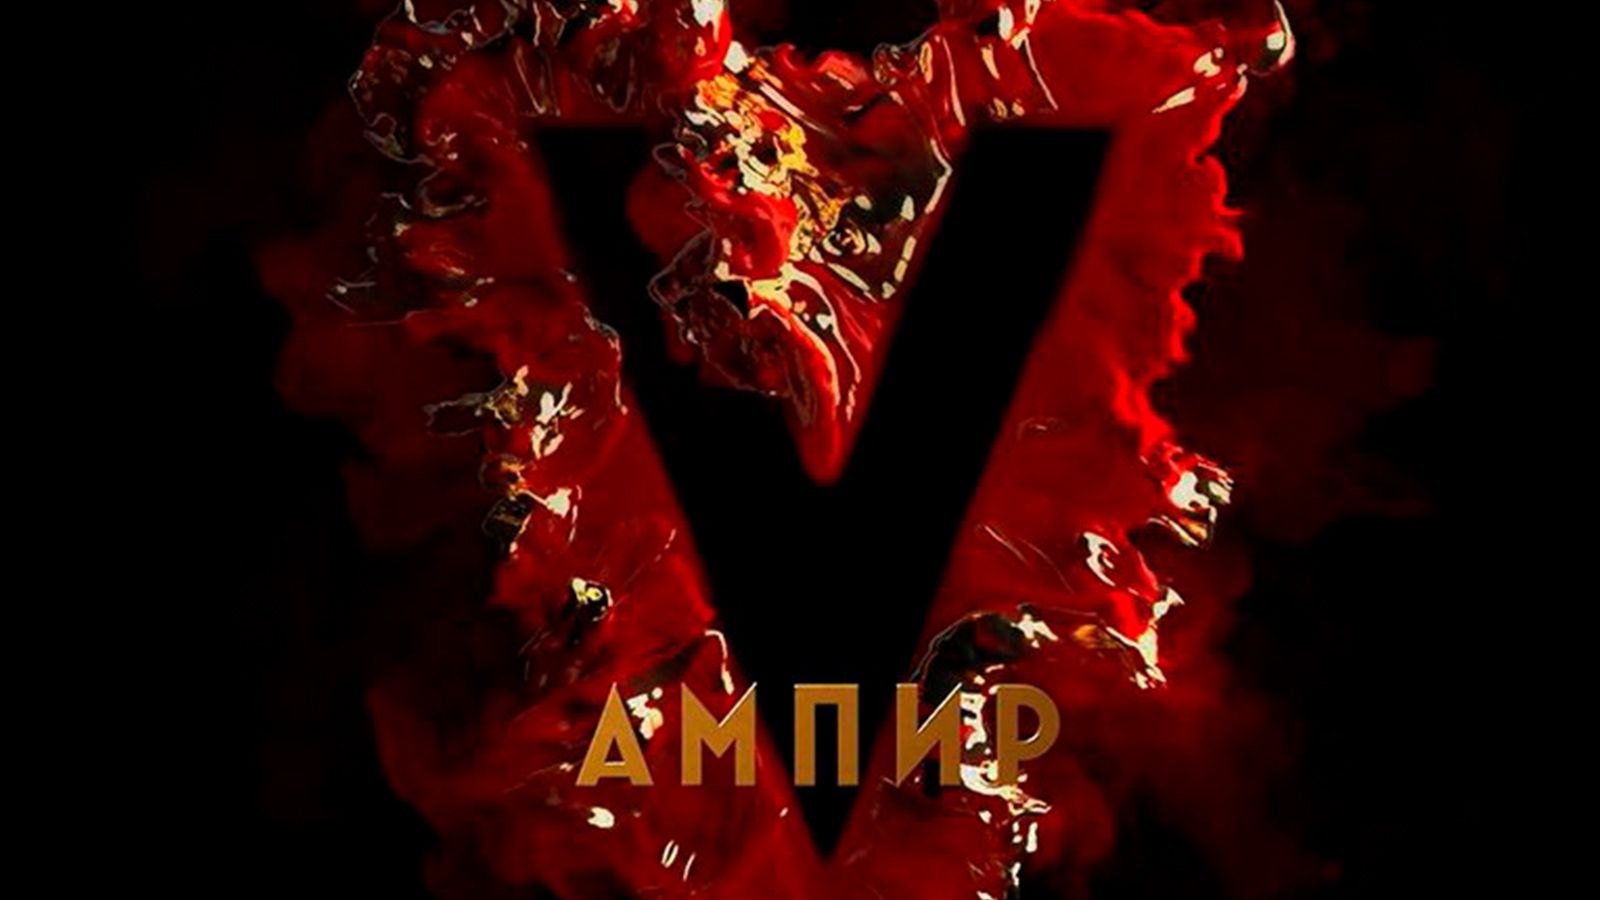 Французская компания приобрела права на фильм «Ампир V»